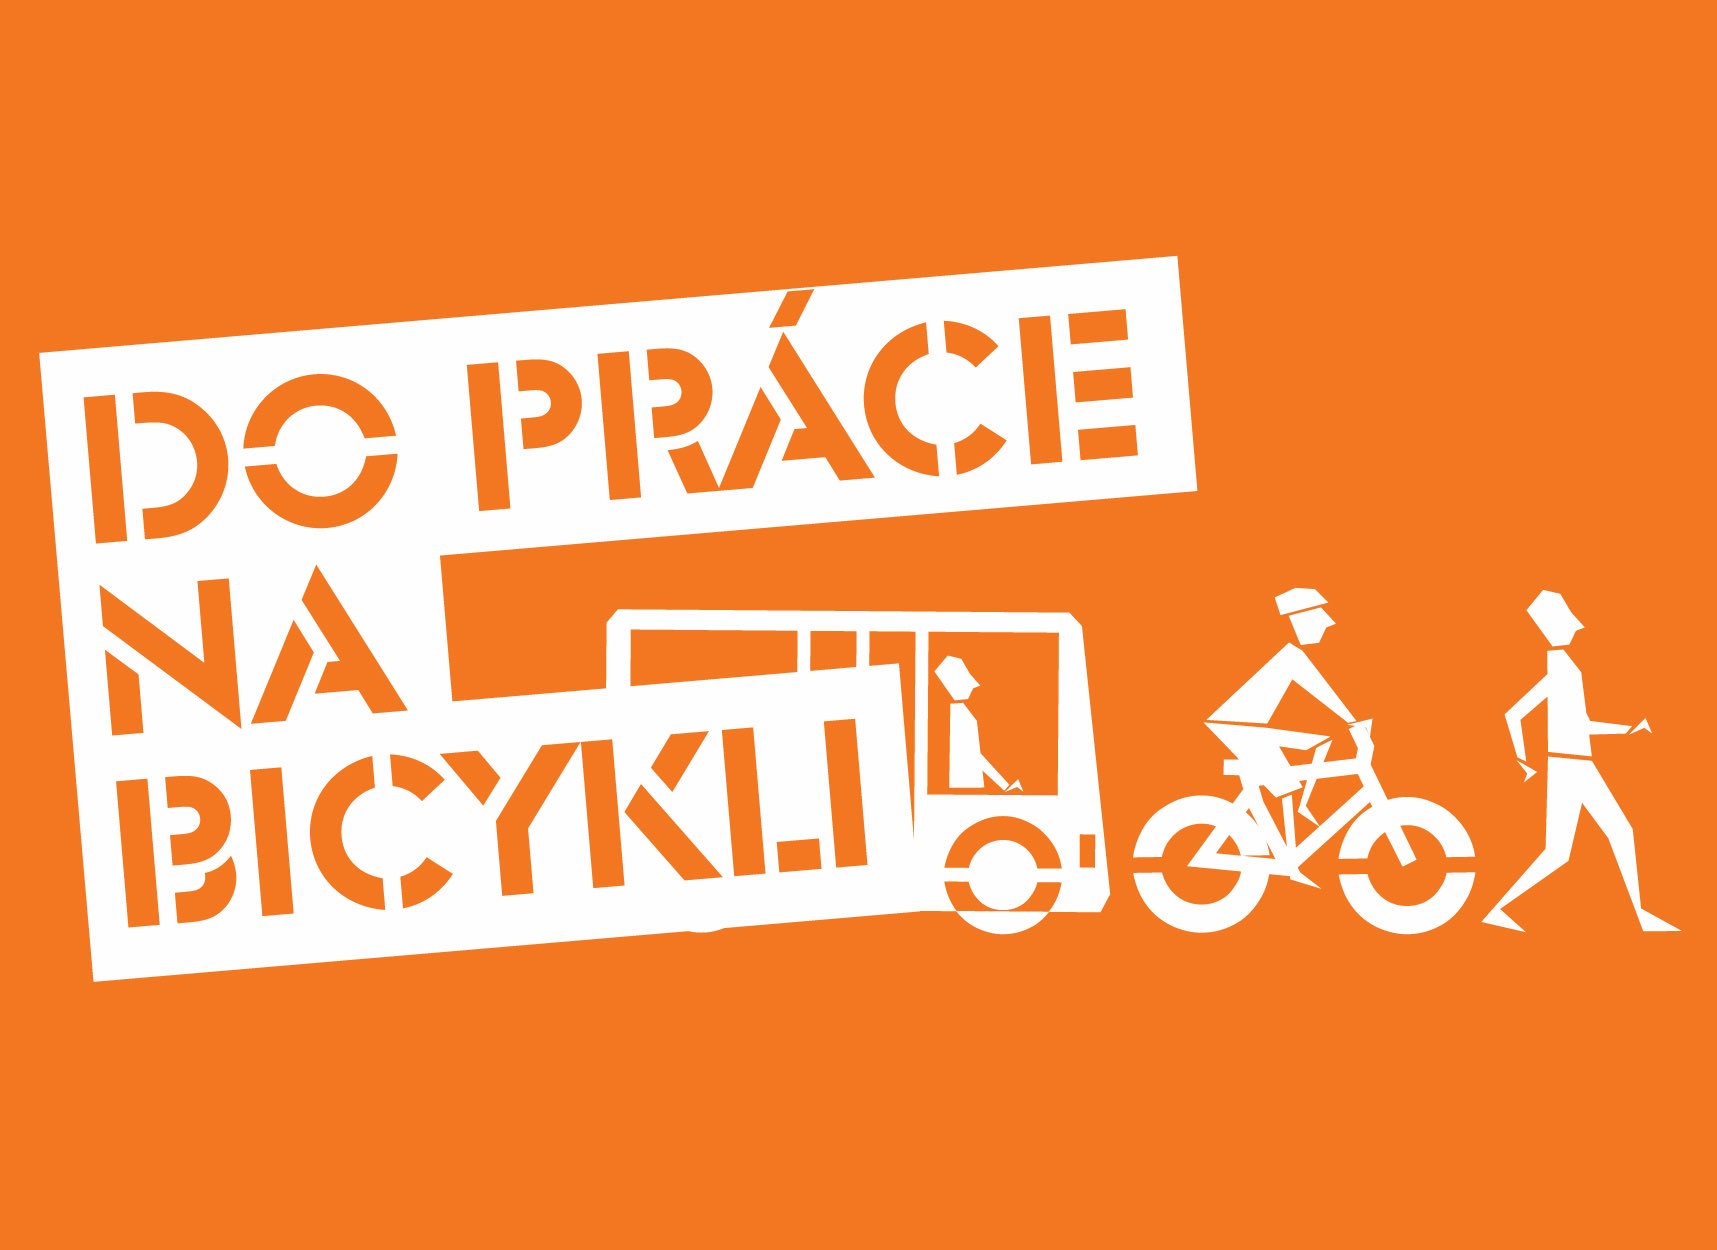 Logo Do práce na bicykli